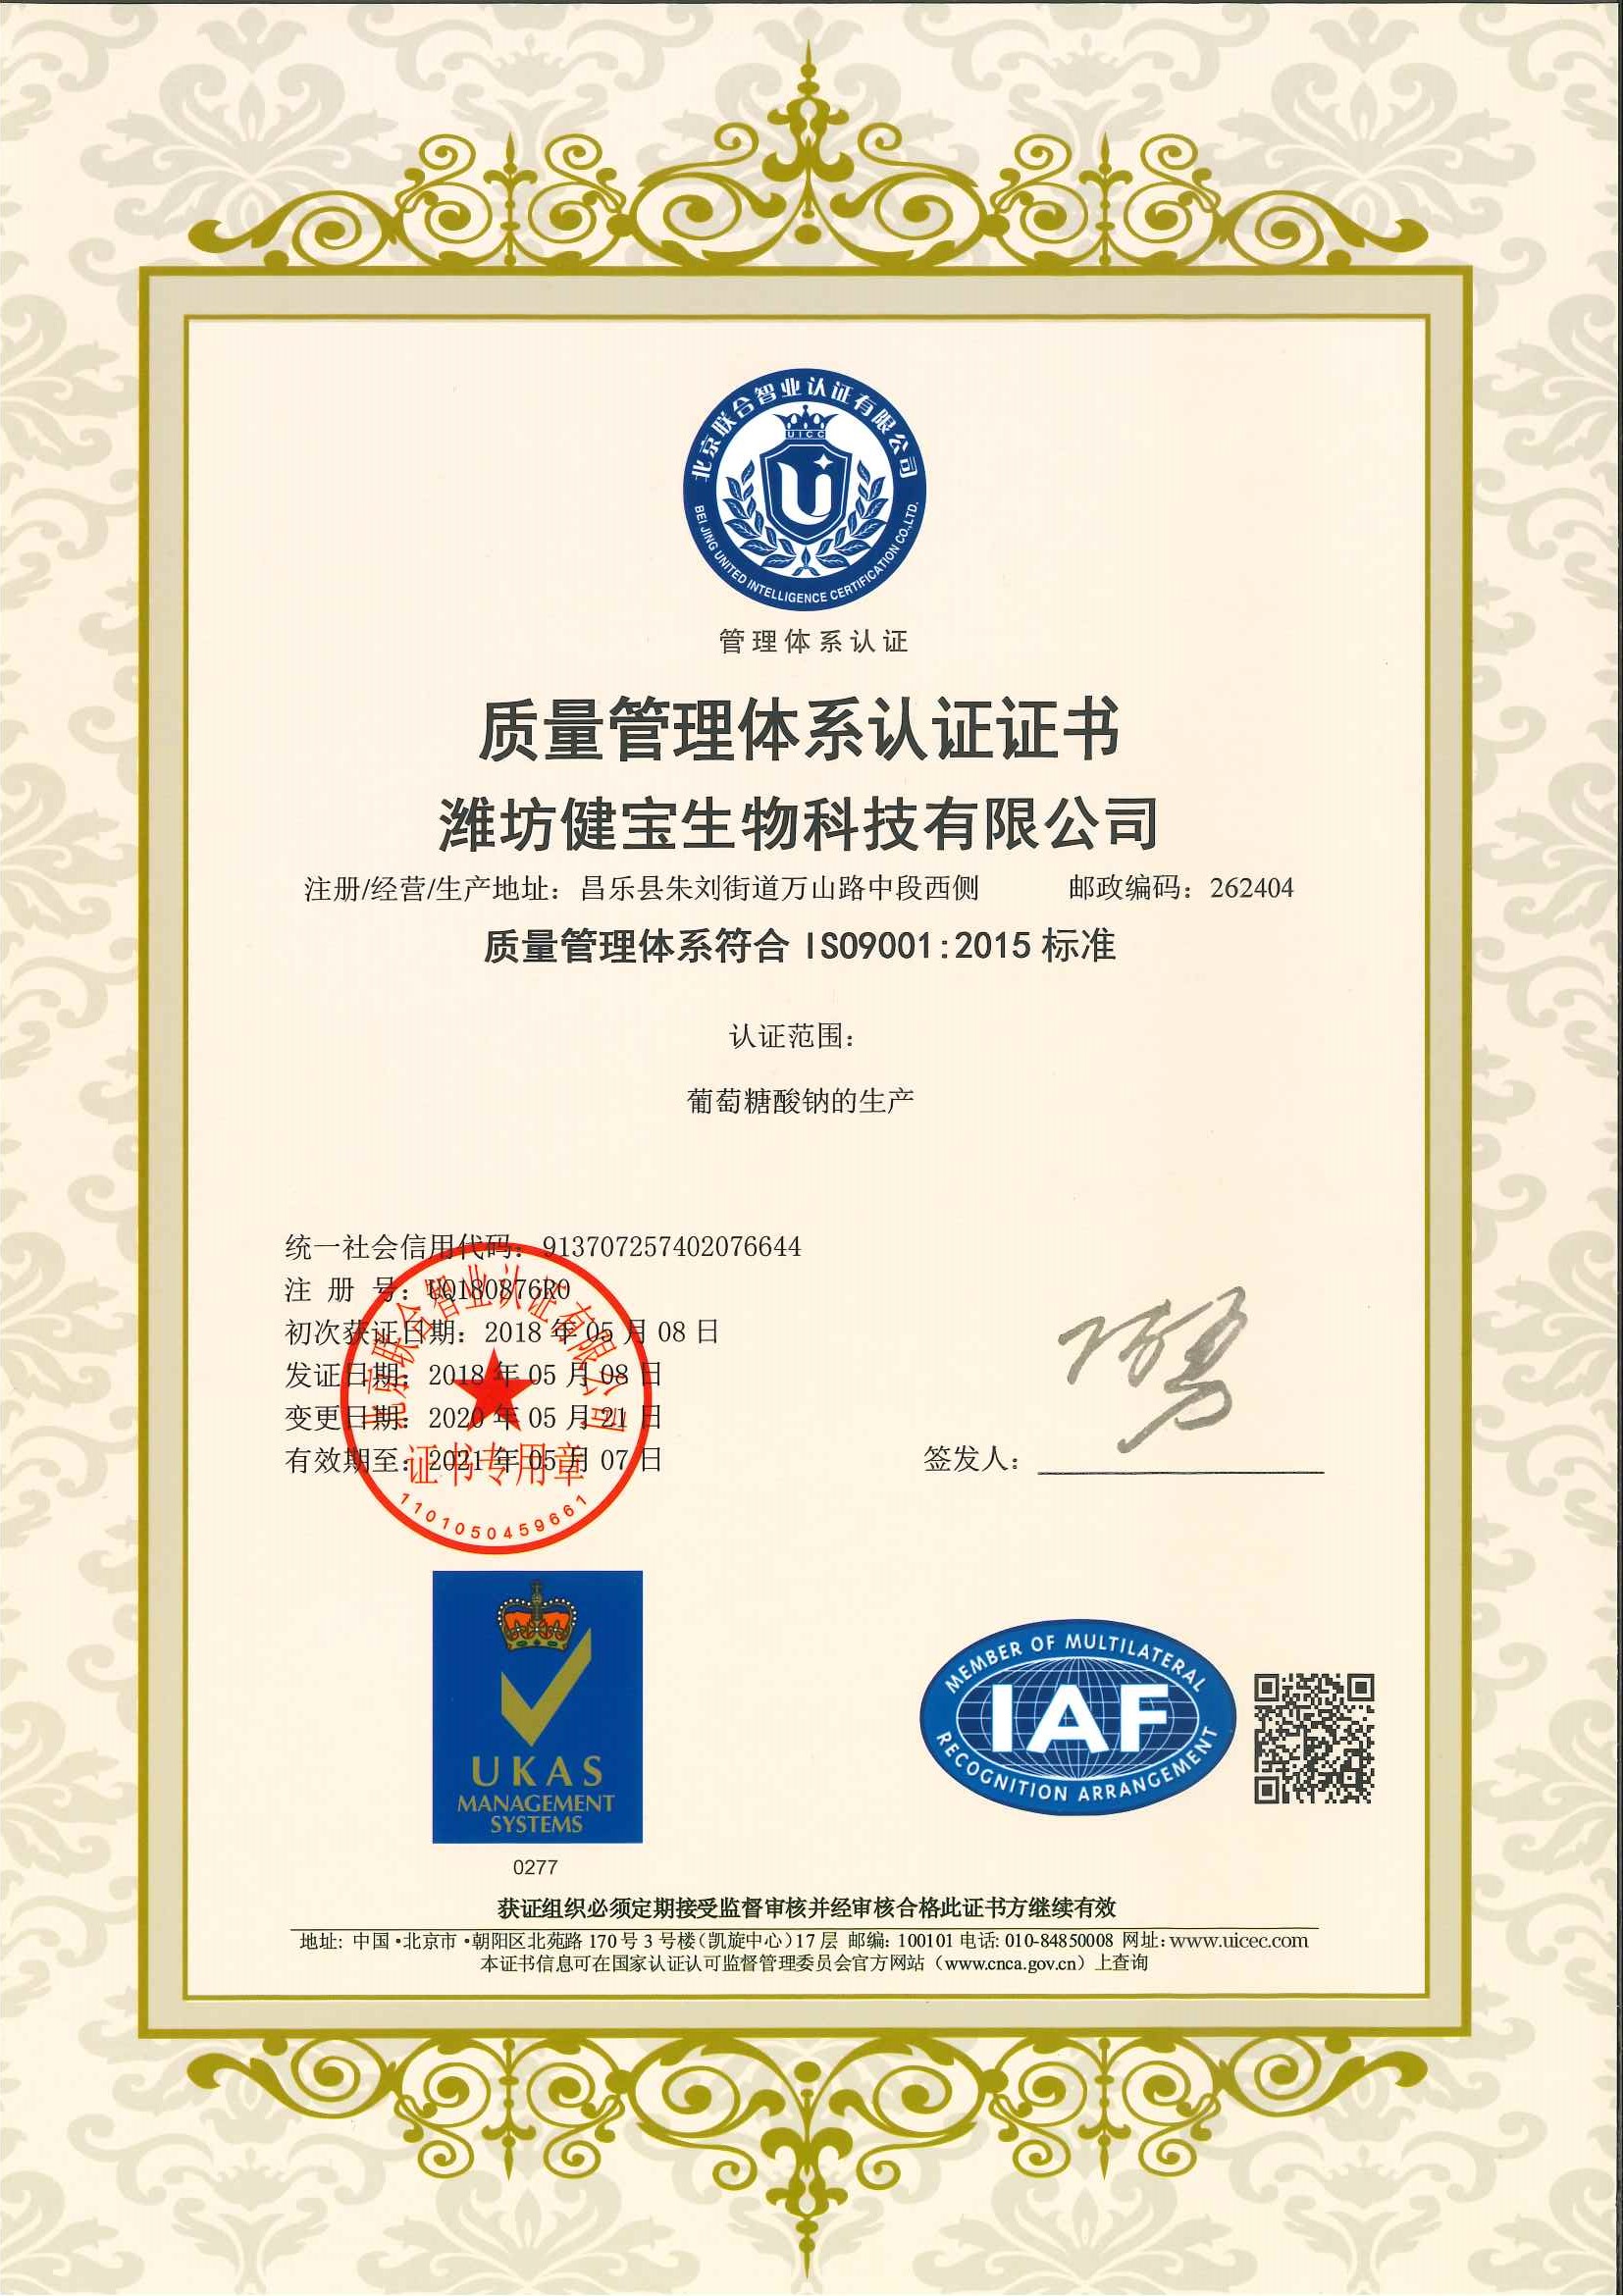 Weifang Jianbao Biotechnology Co.,Ltd.